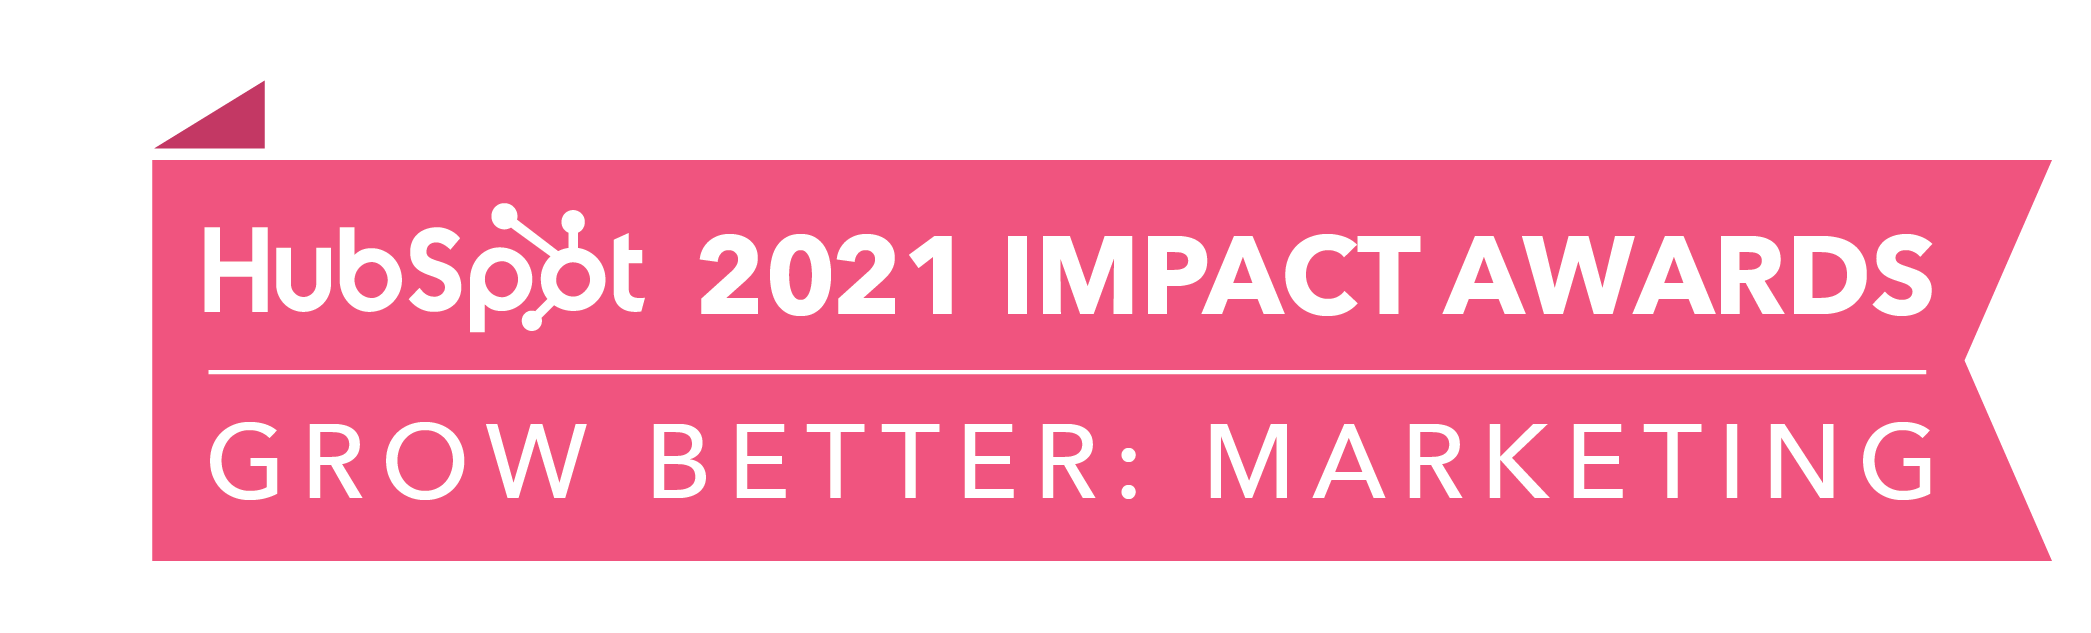 HubSpot_ImpactAwards_2021_GBMarketing2-4